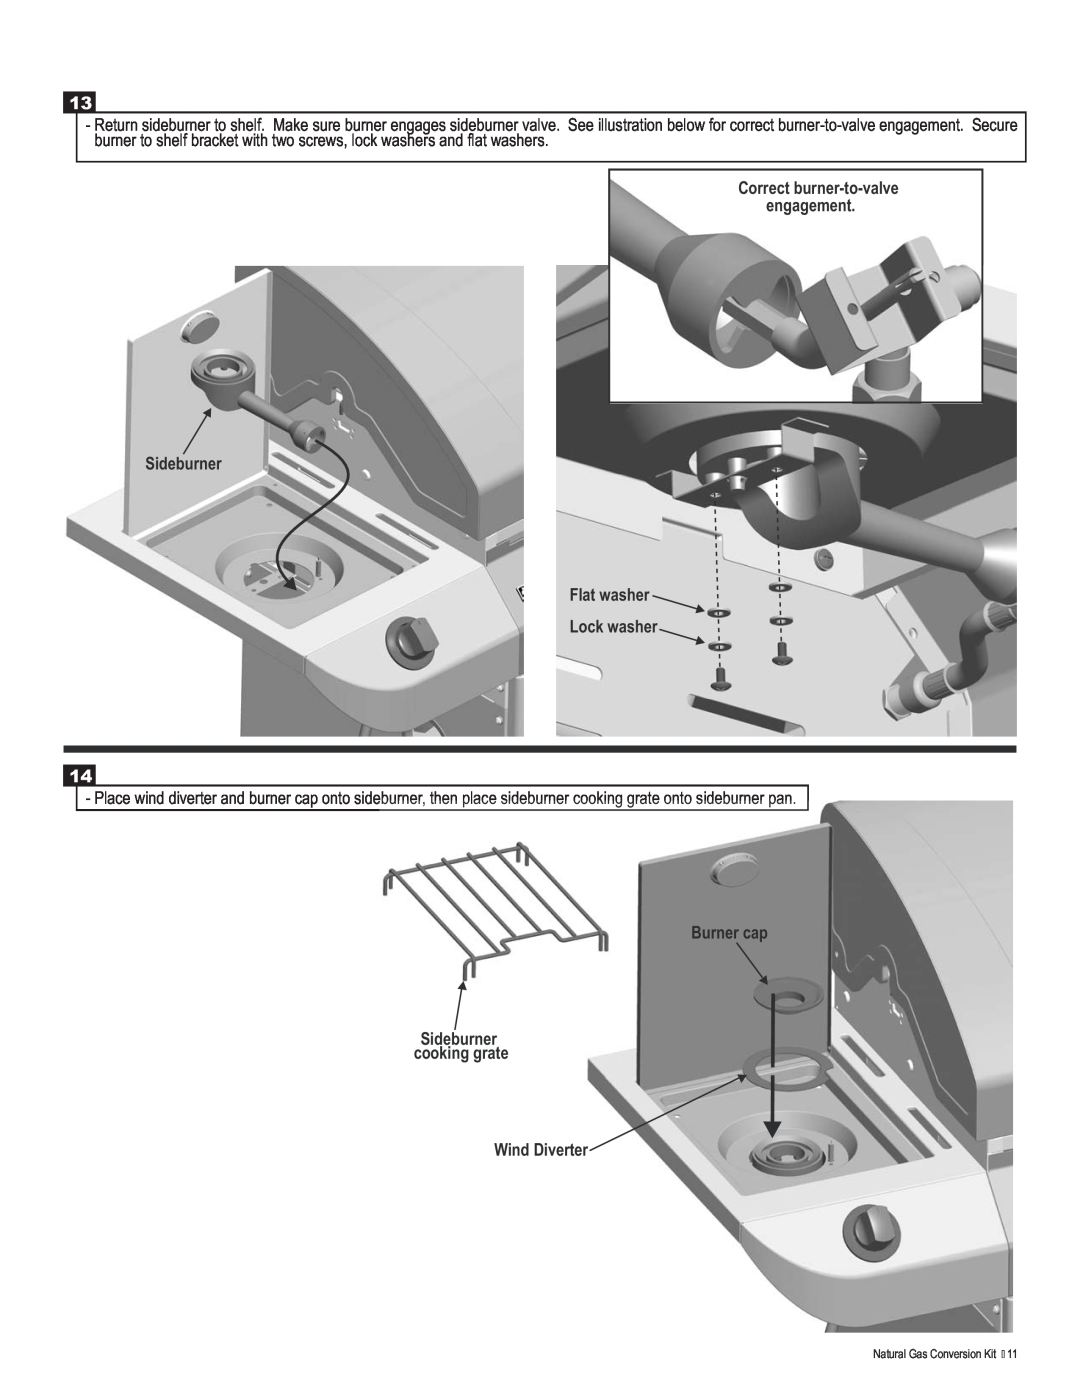 Char-Broil 4984619 manual Correct burner-to-valve engagement Sideburner Flat washer Lock washer 